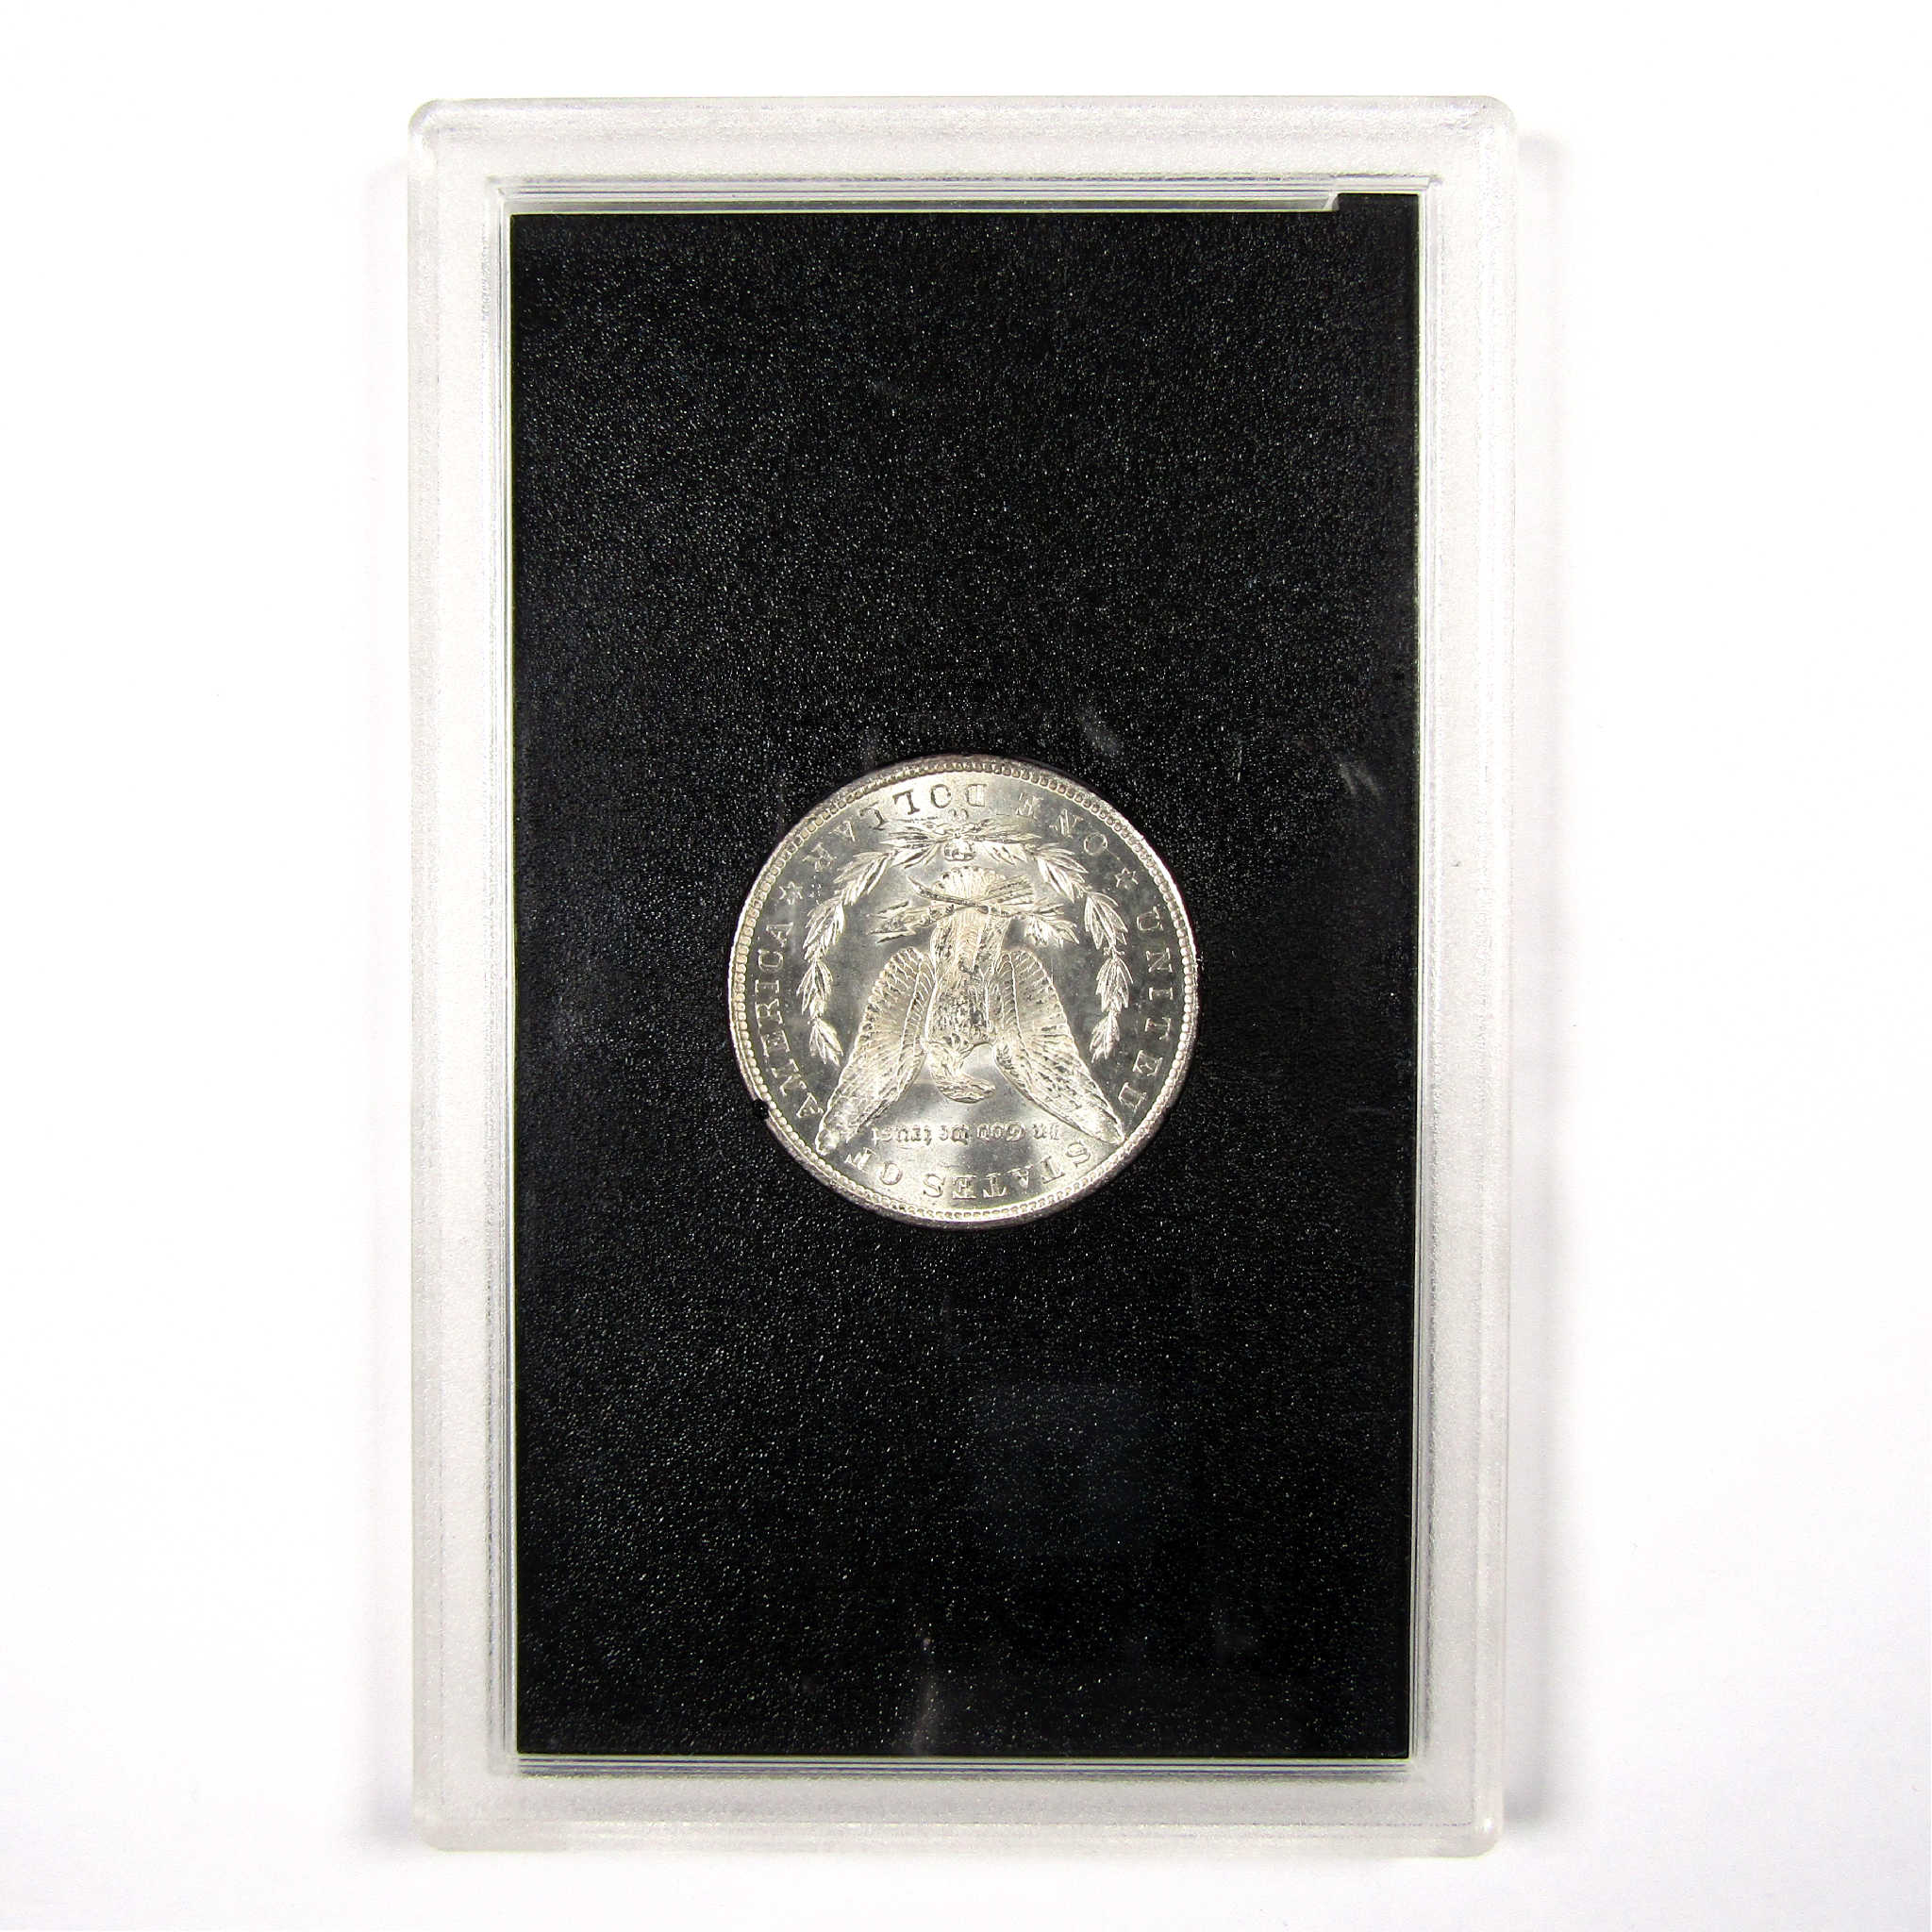 1884 CC GSA Morgan Dollar BU Uncirculated Silver $1 Coin SKU:I11496 - Morgan coin - Morgan silver dollar - Morgan silver dollar for sale - Profile Coins &amp; Collectibles